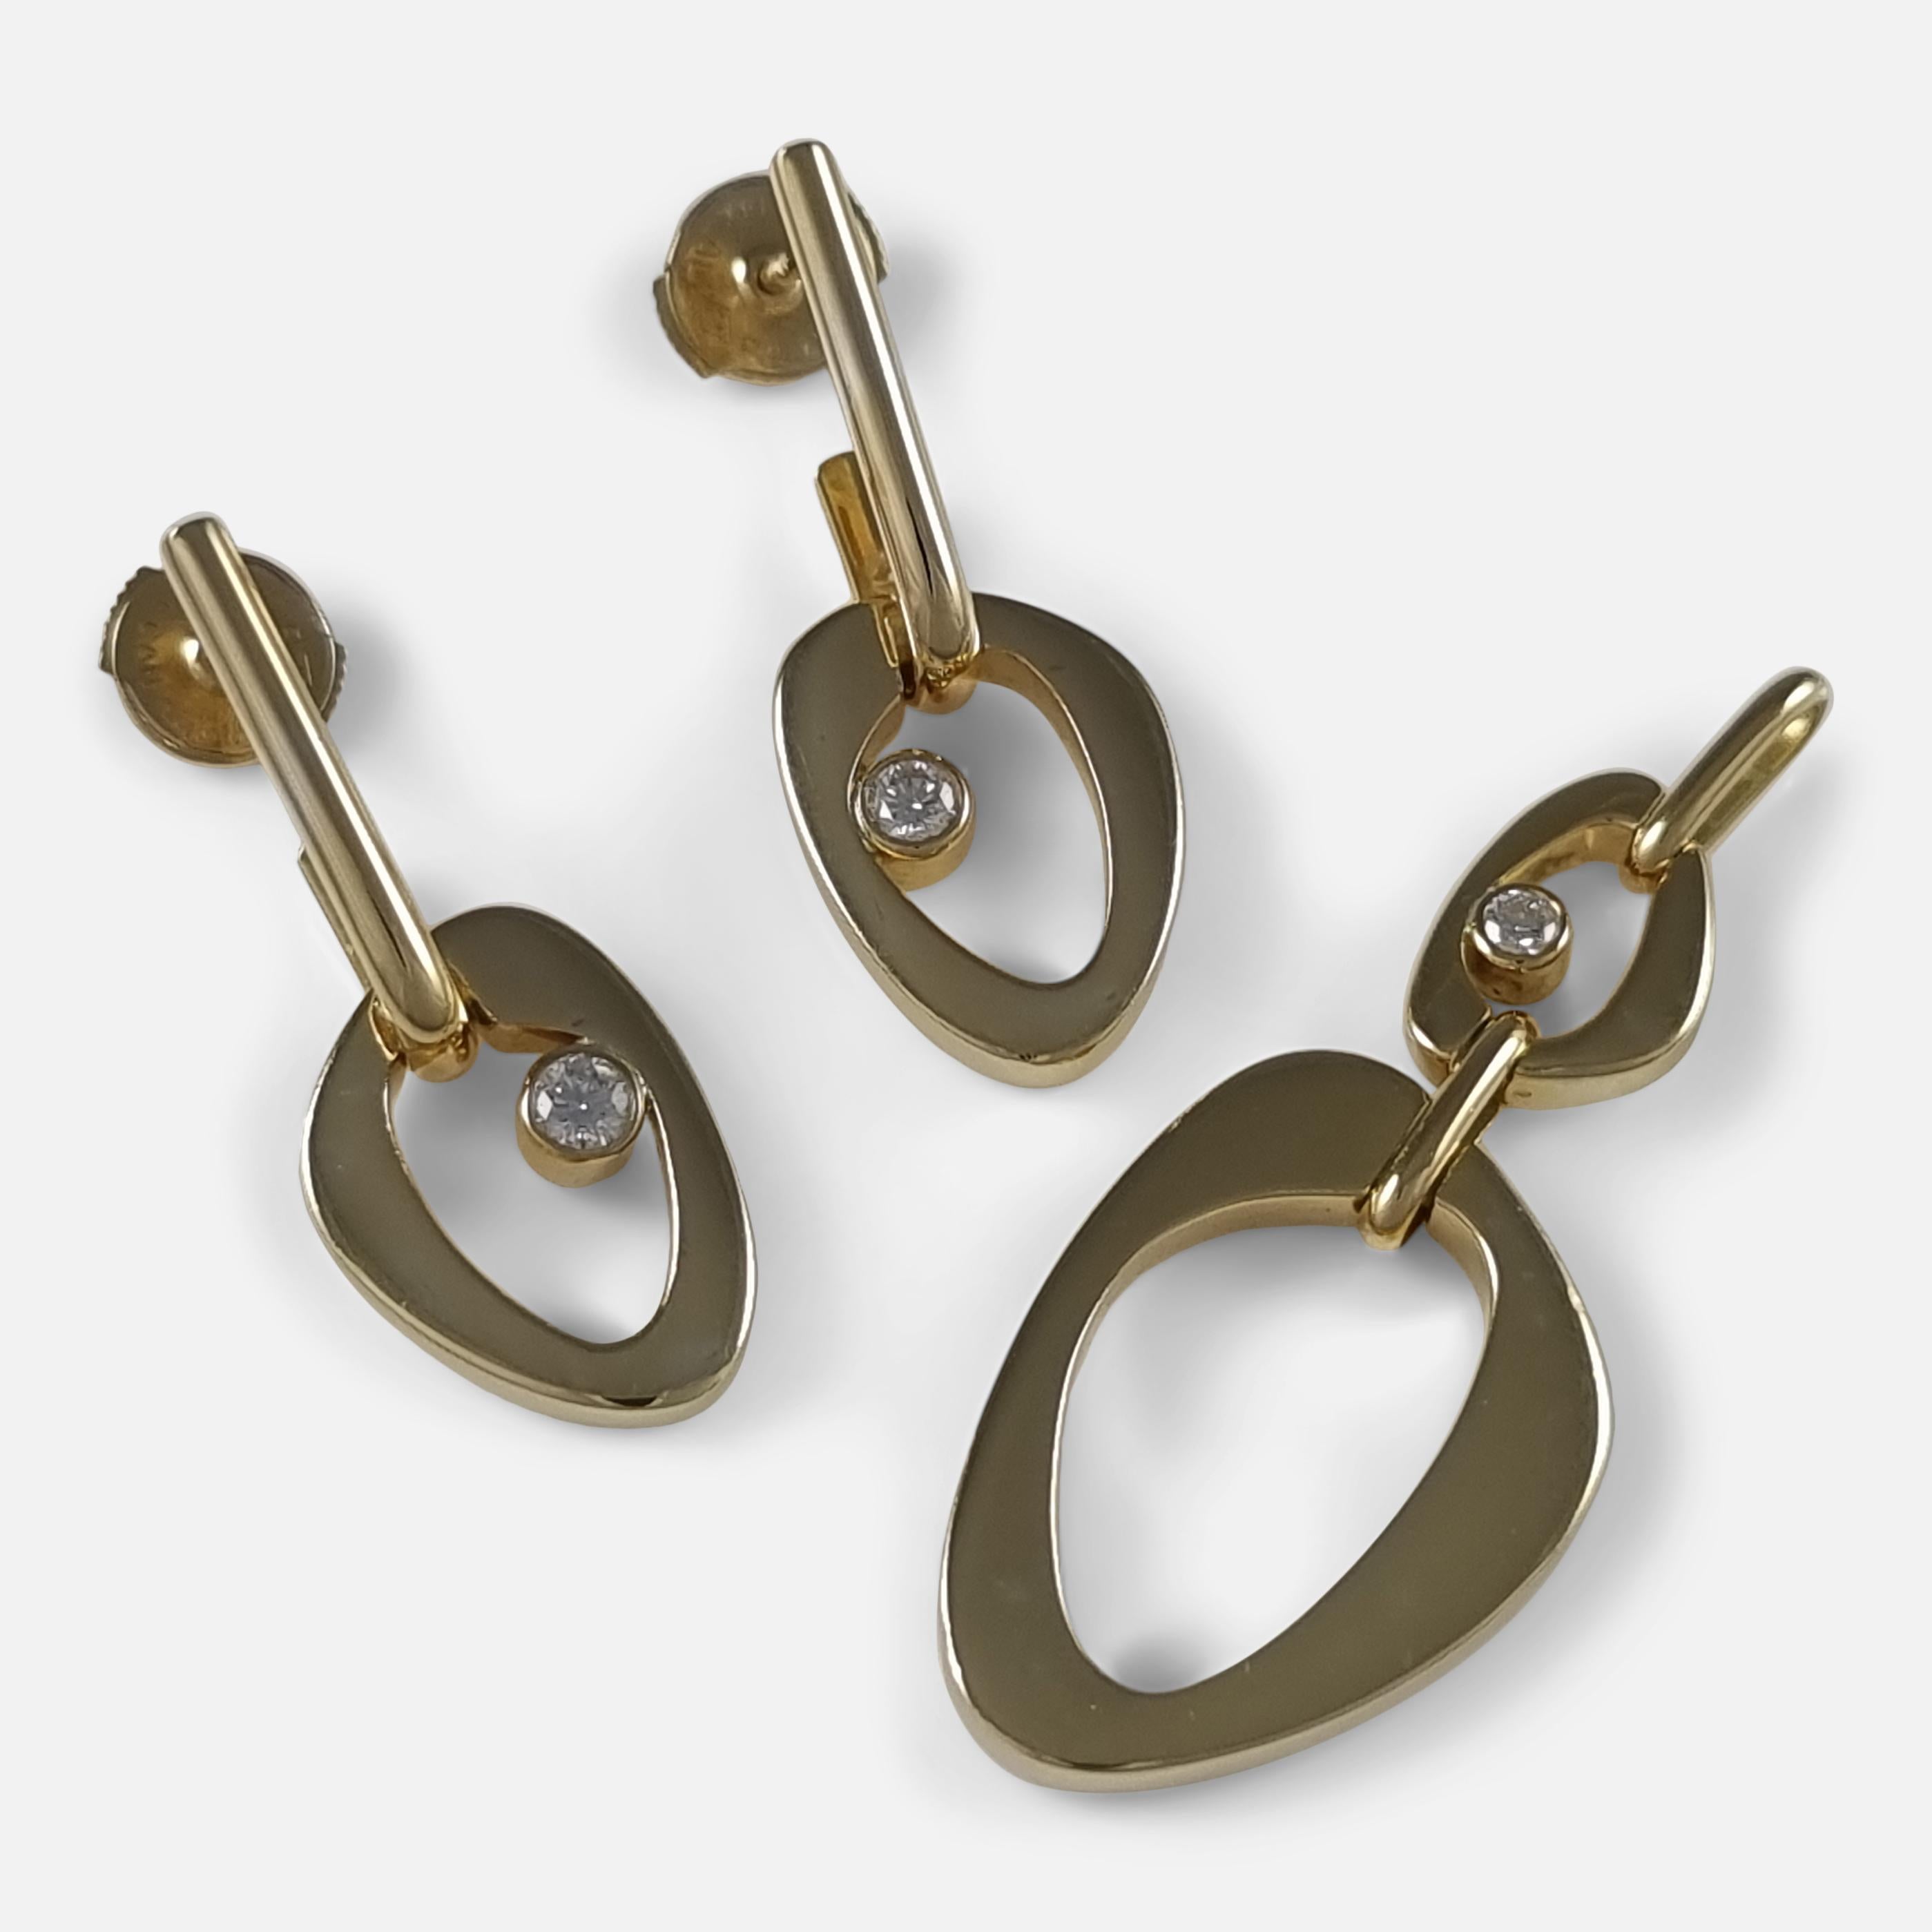 Ensemble pendentif et boucles d'oreilles en or jaune 18ct et diamants, conçu par Lina Falkesgaard pour Georg Jensen. 

Le pendentif est estampillé de la marque Georg Jensen en ovale pointillé, 